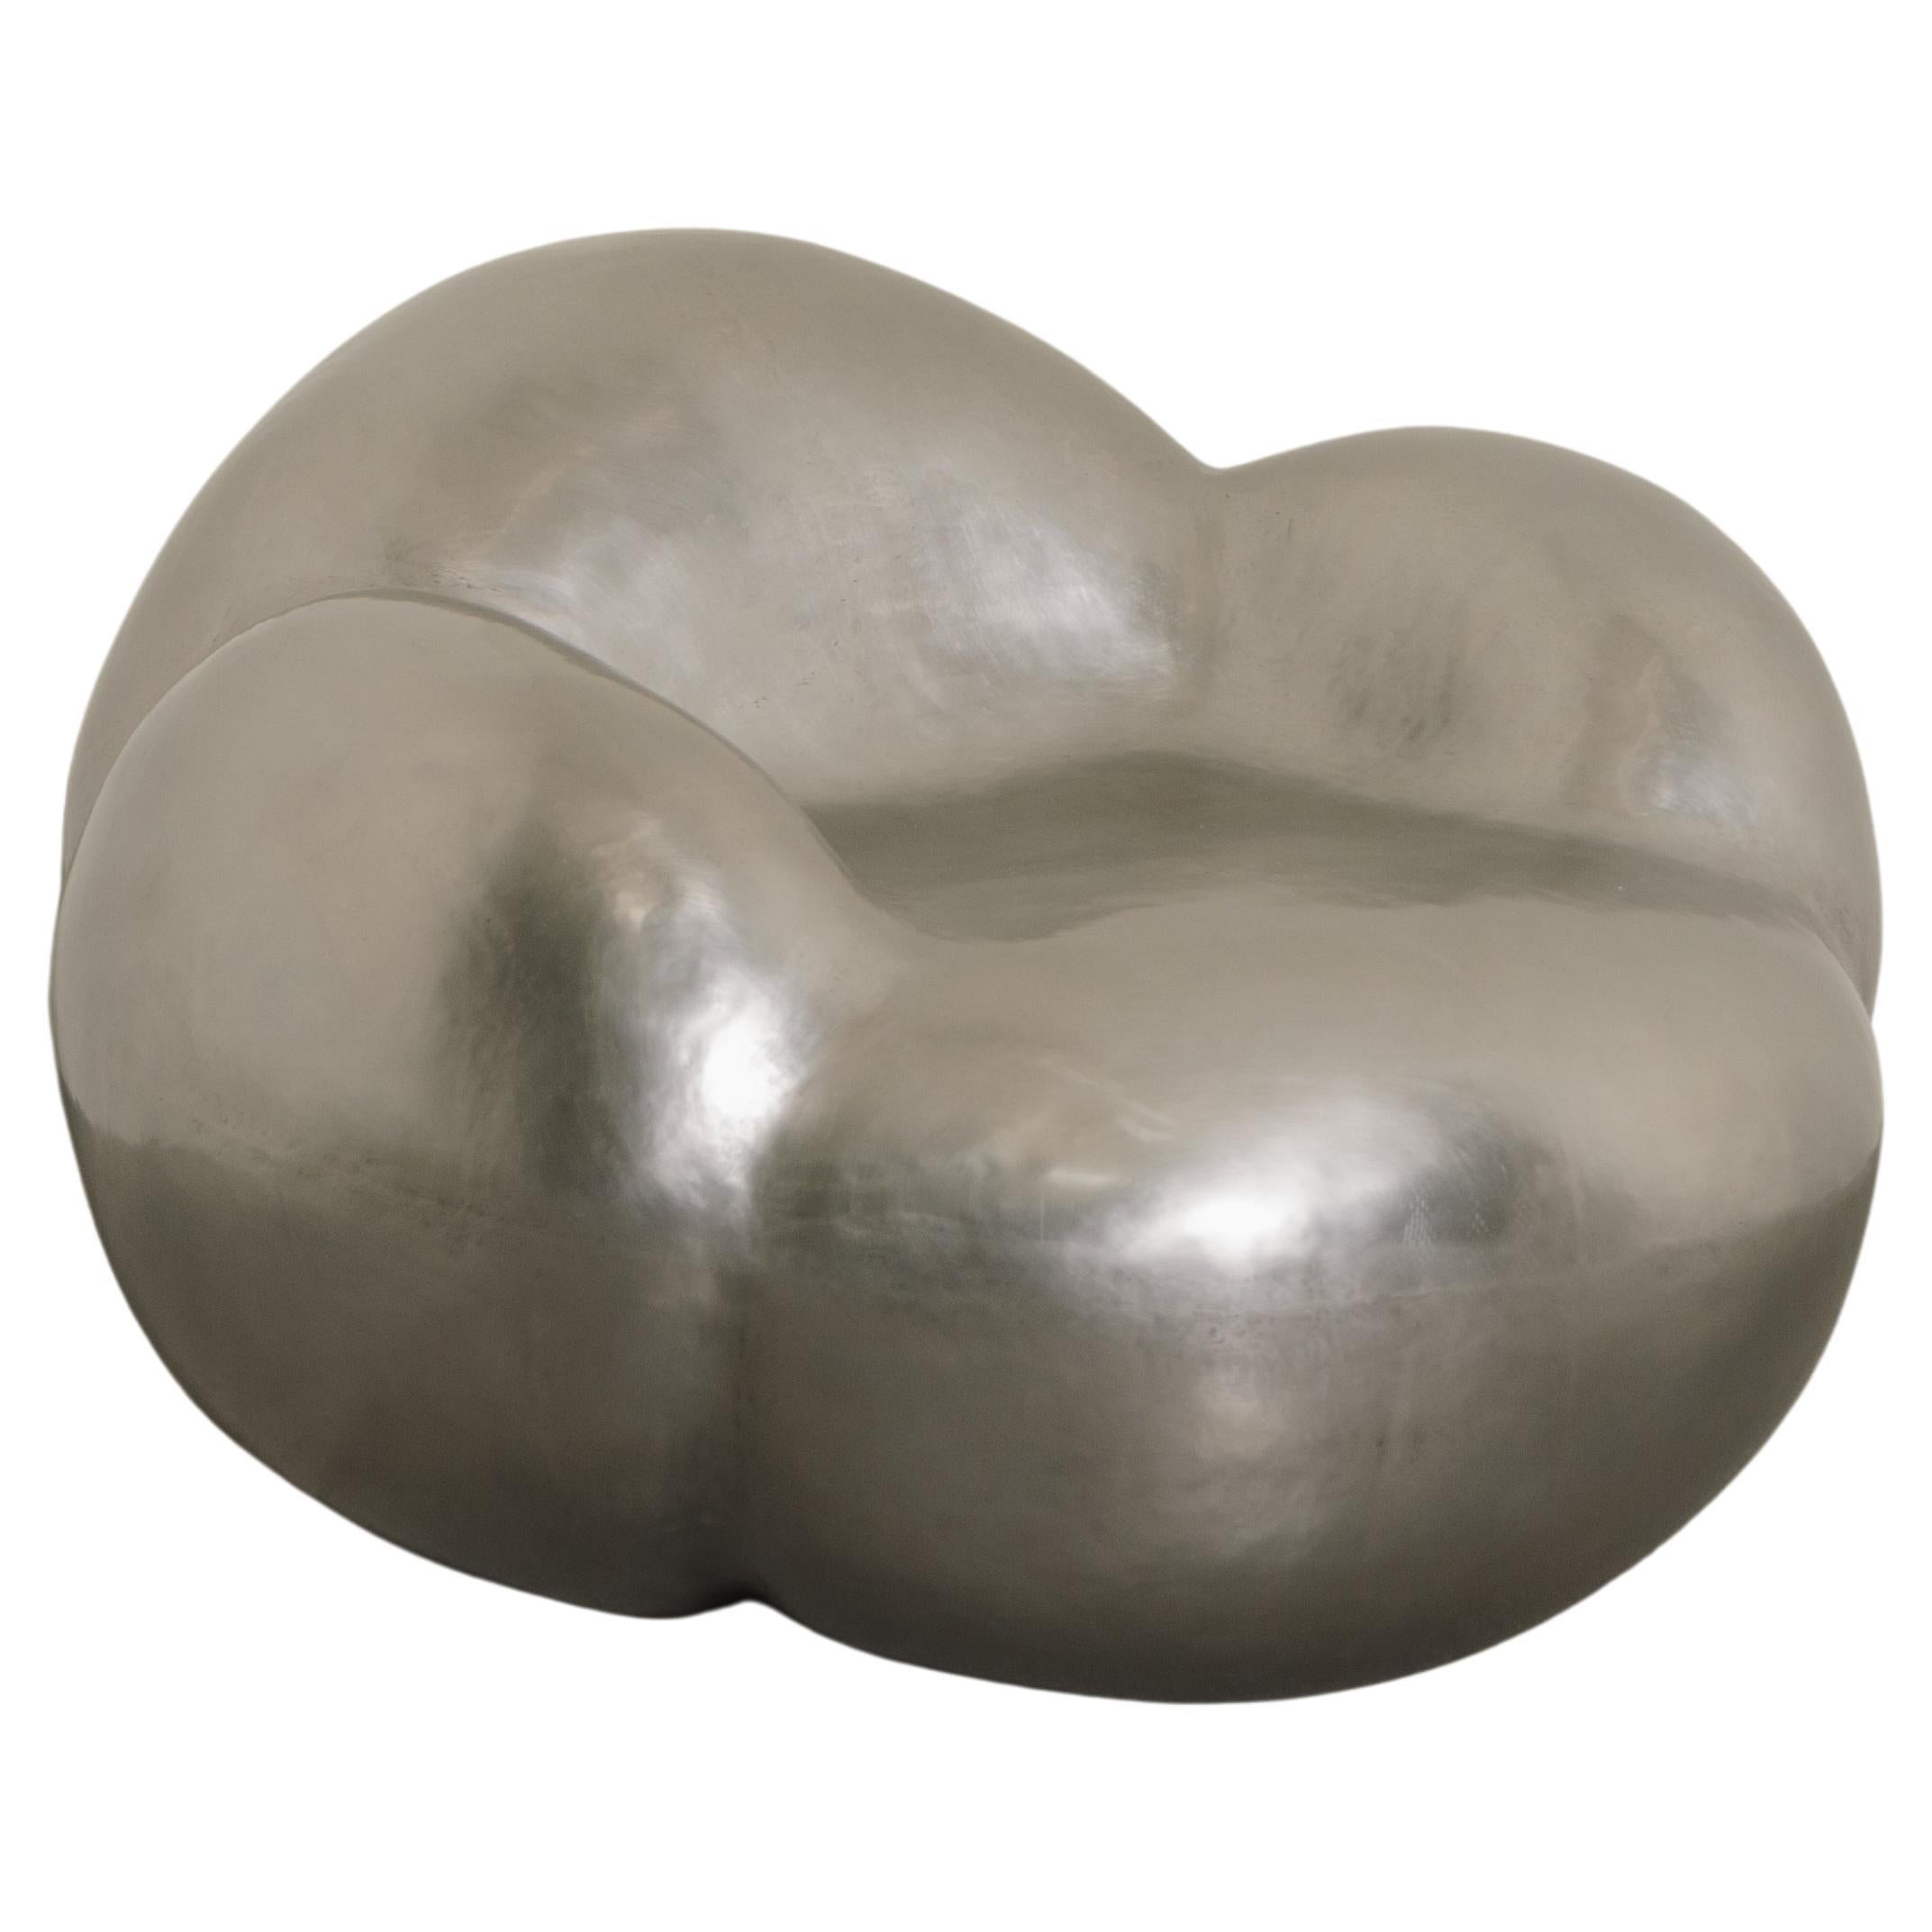 Chaise nuage contemporaine en acier inoxydable de Robert Kuo, édition limitée